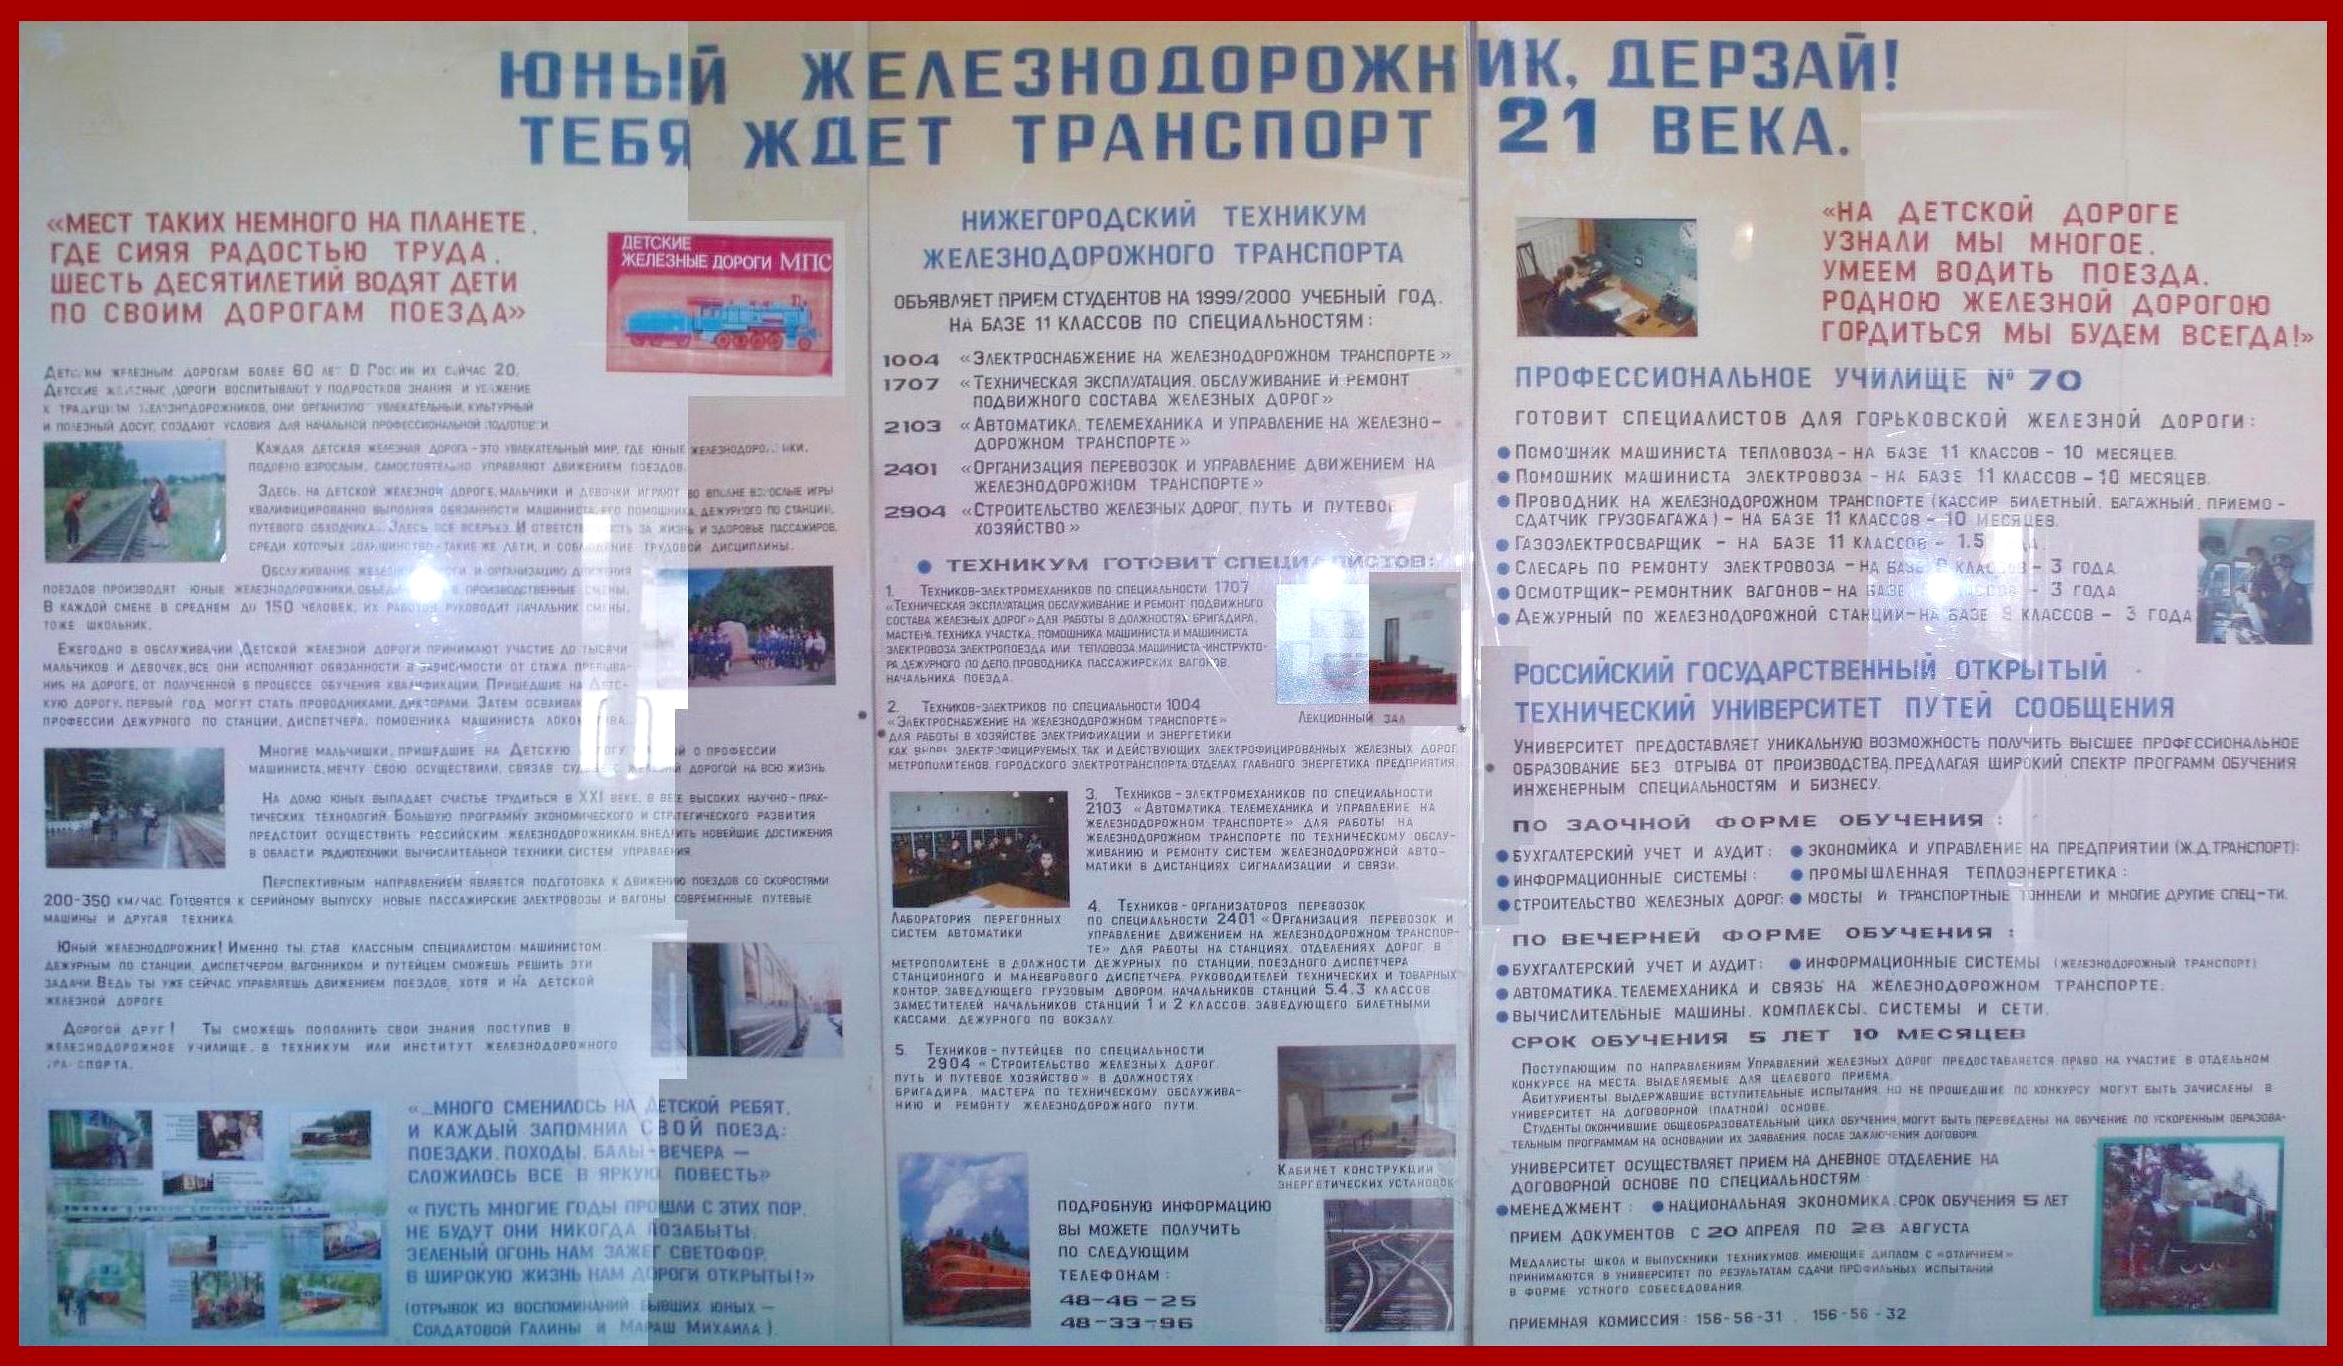 Малая Горьковская (Нижегородская) детская железная дорога  - изображения разные (часть 2)